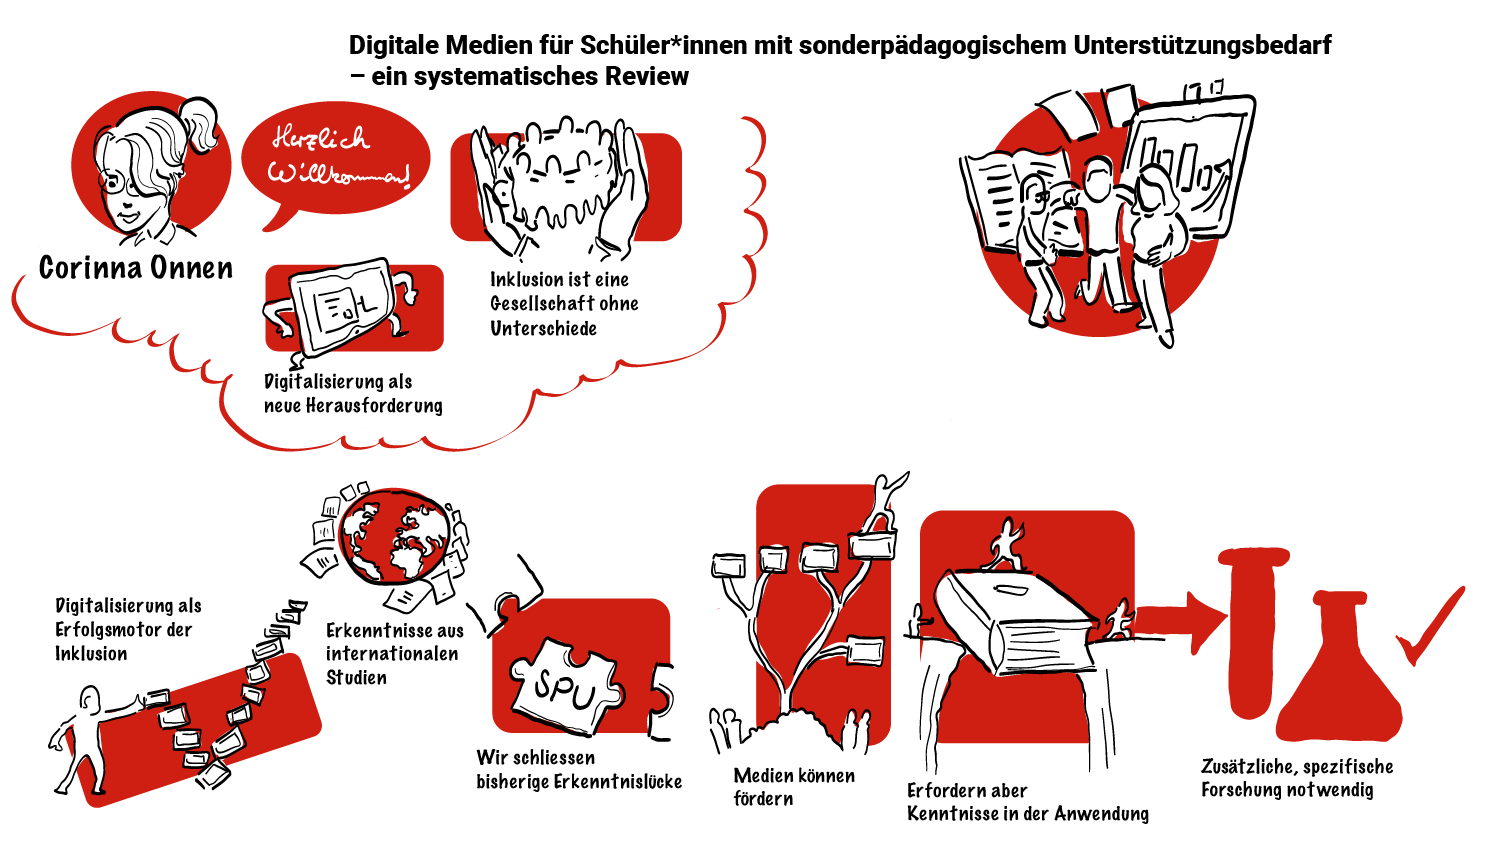 Digitale Medien für Lernende mit sonderpädagogischem Unterstützungsbedarf: Erkenntnisse eines systematischen Reviews